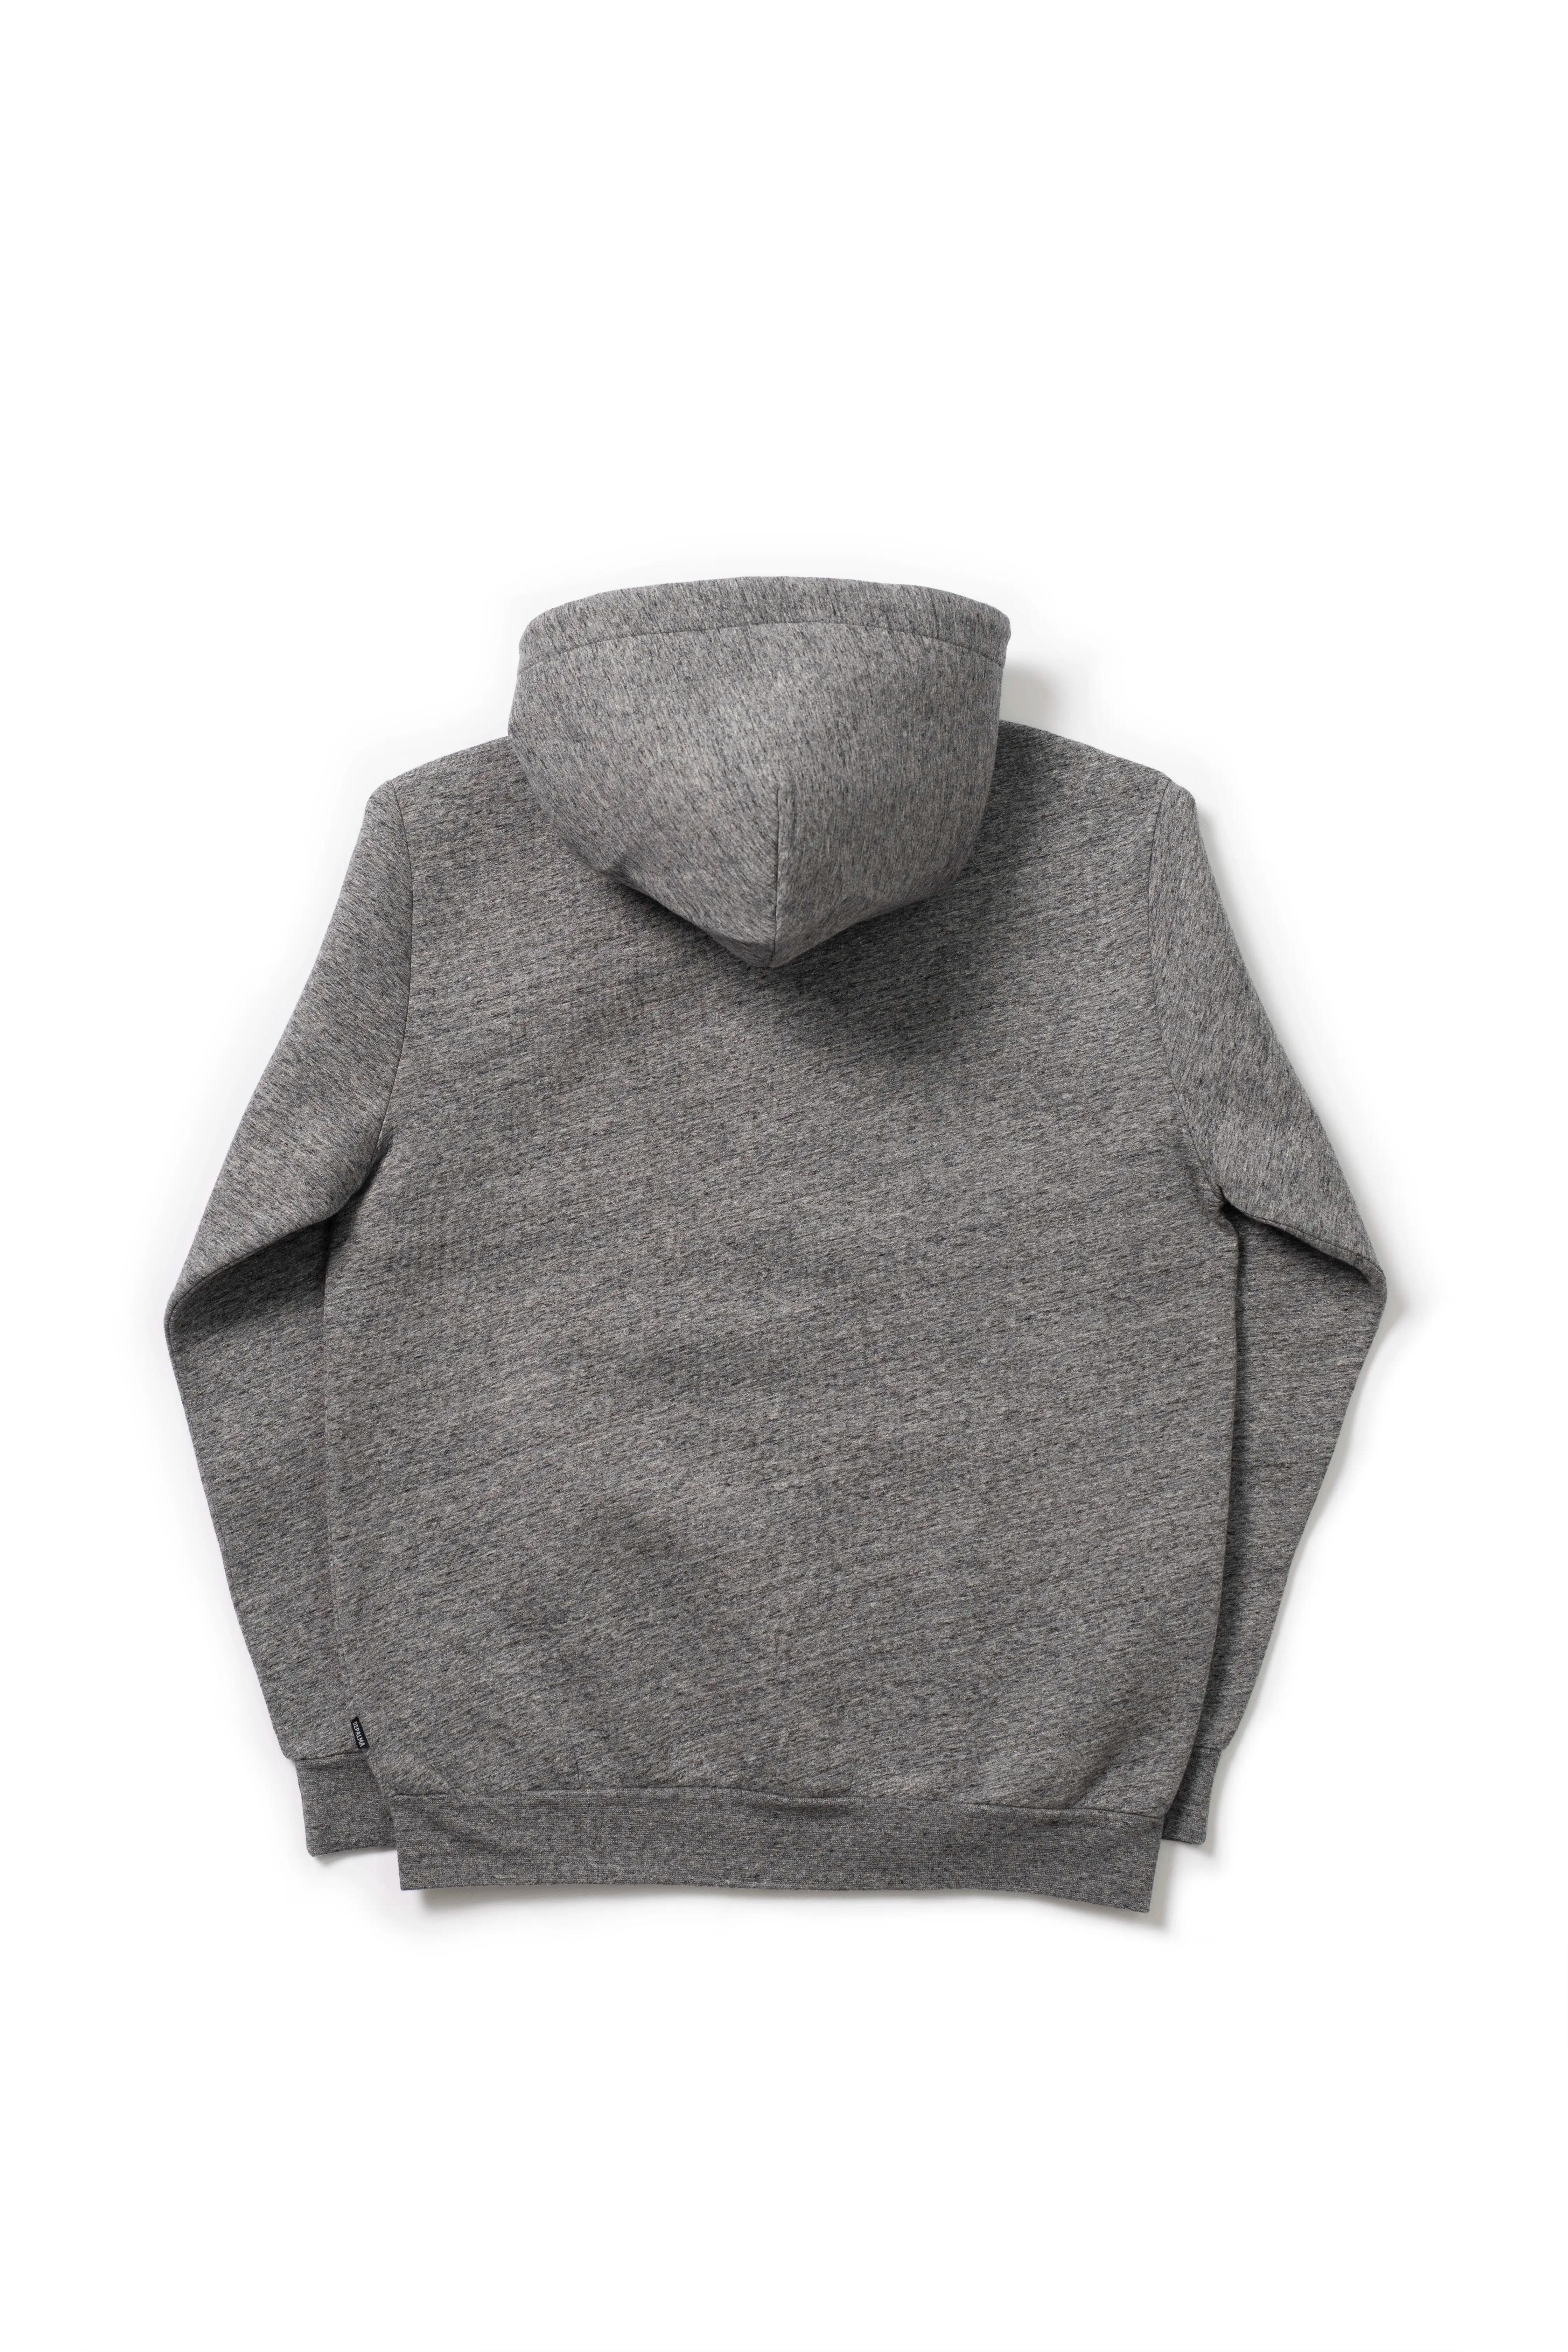 Photo of Albany Bonded Zip Hooded Sweatshirt, Grey Melange